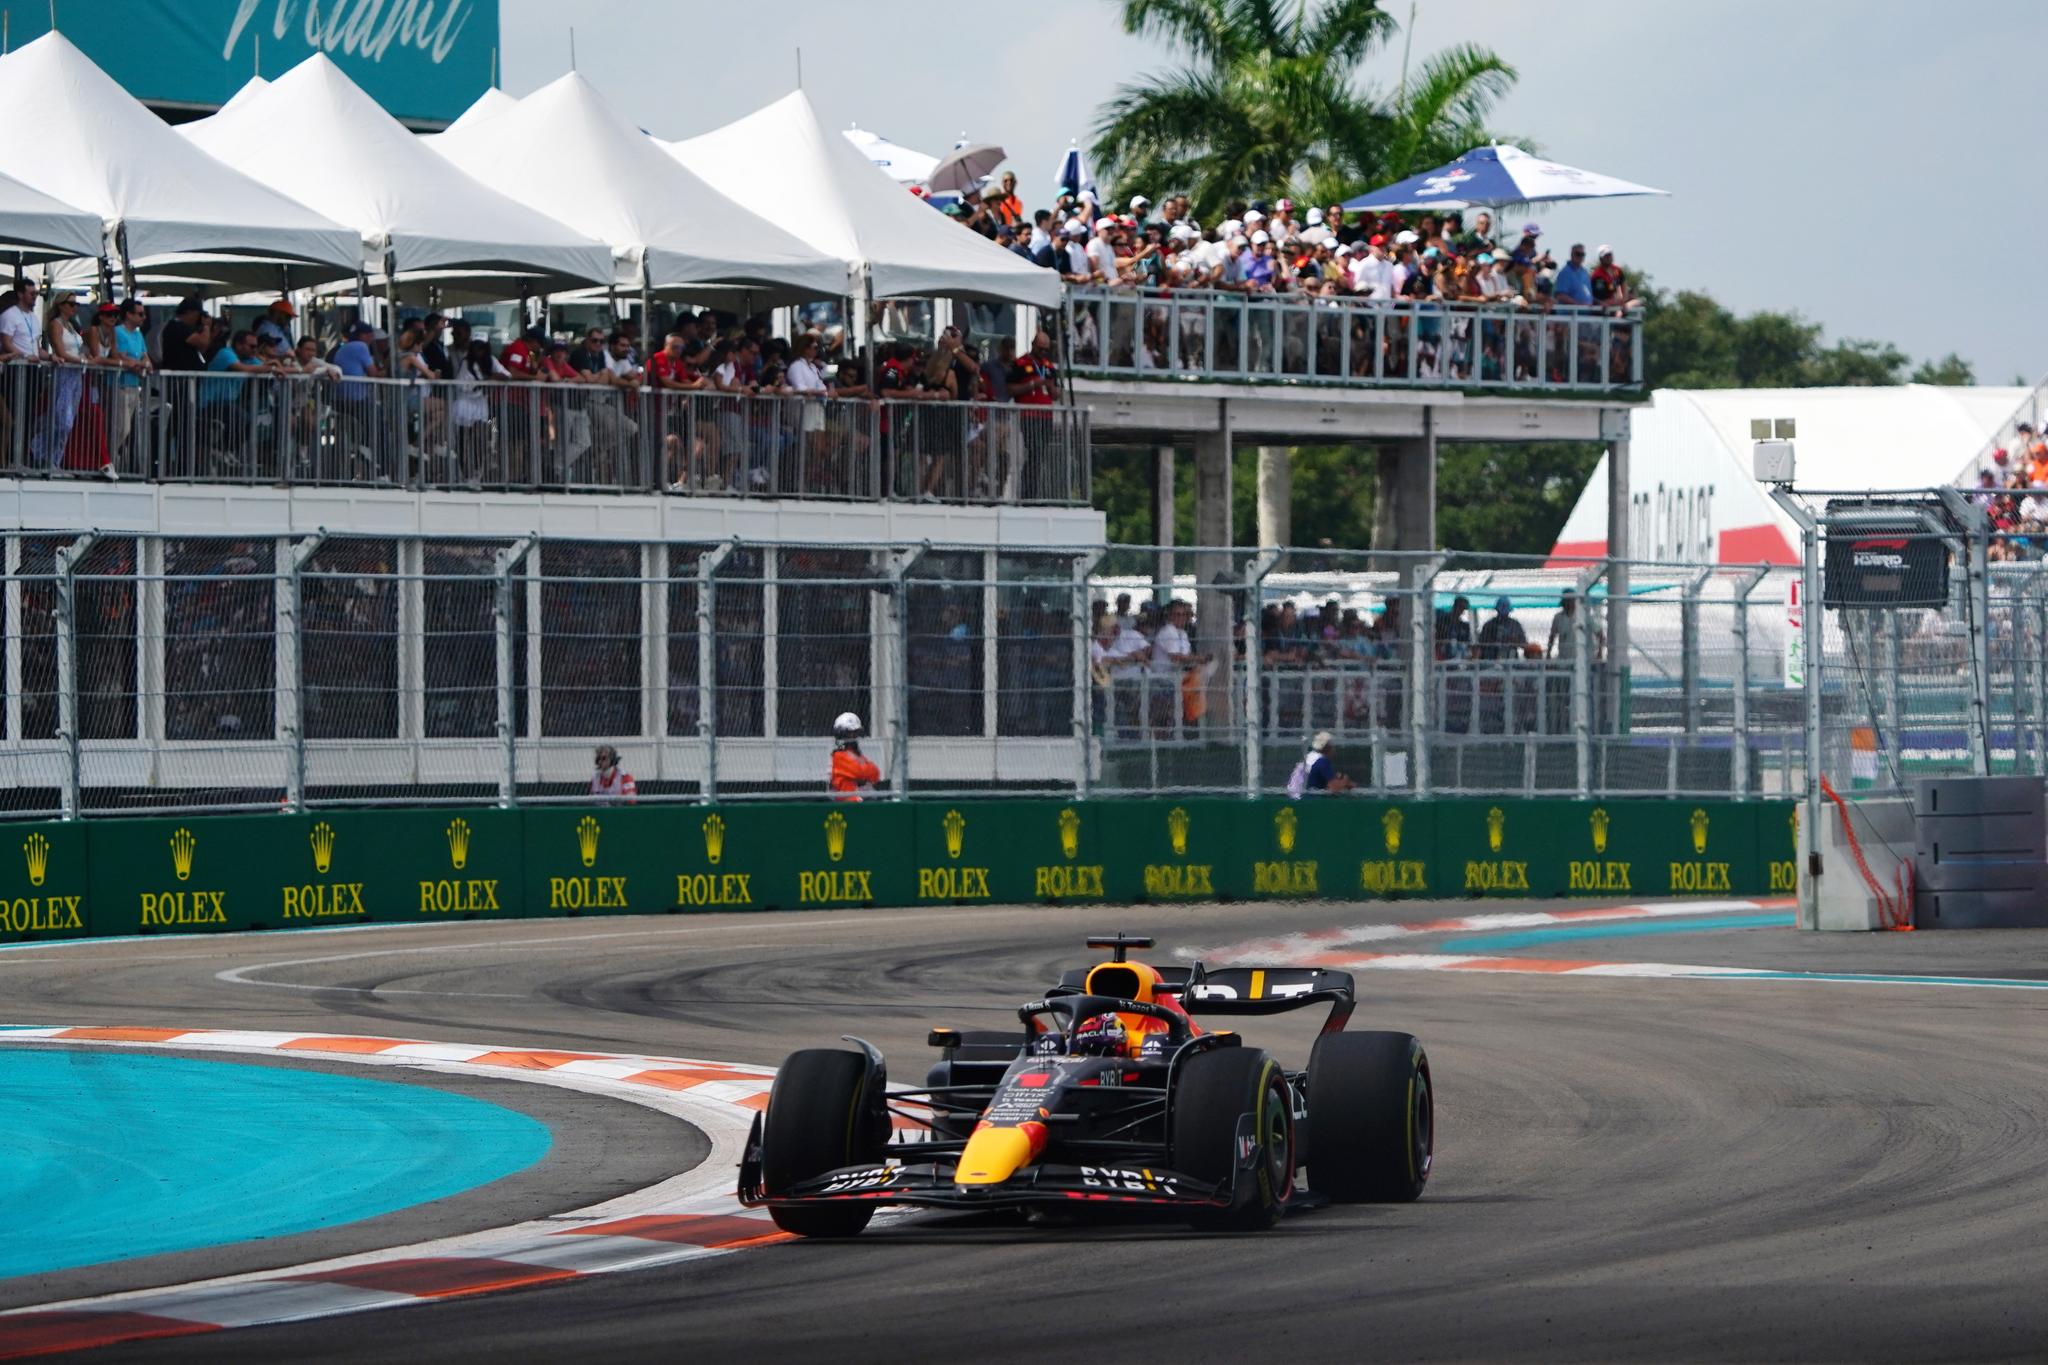 Det var stor stemning da Formel 1-sirkuset for første gang kom til Miami søndag. Her fører Max Verstappen an feltet.